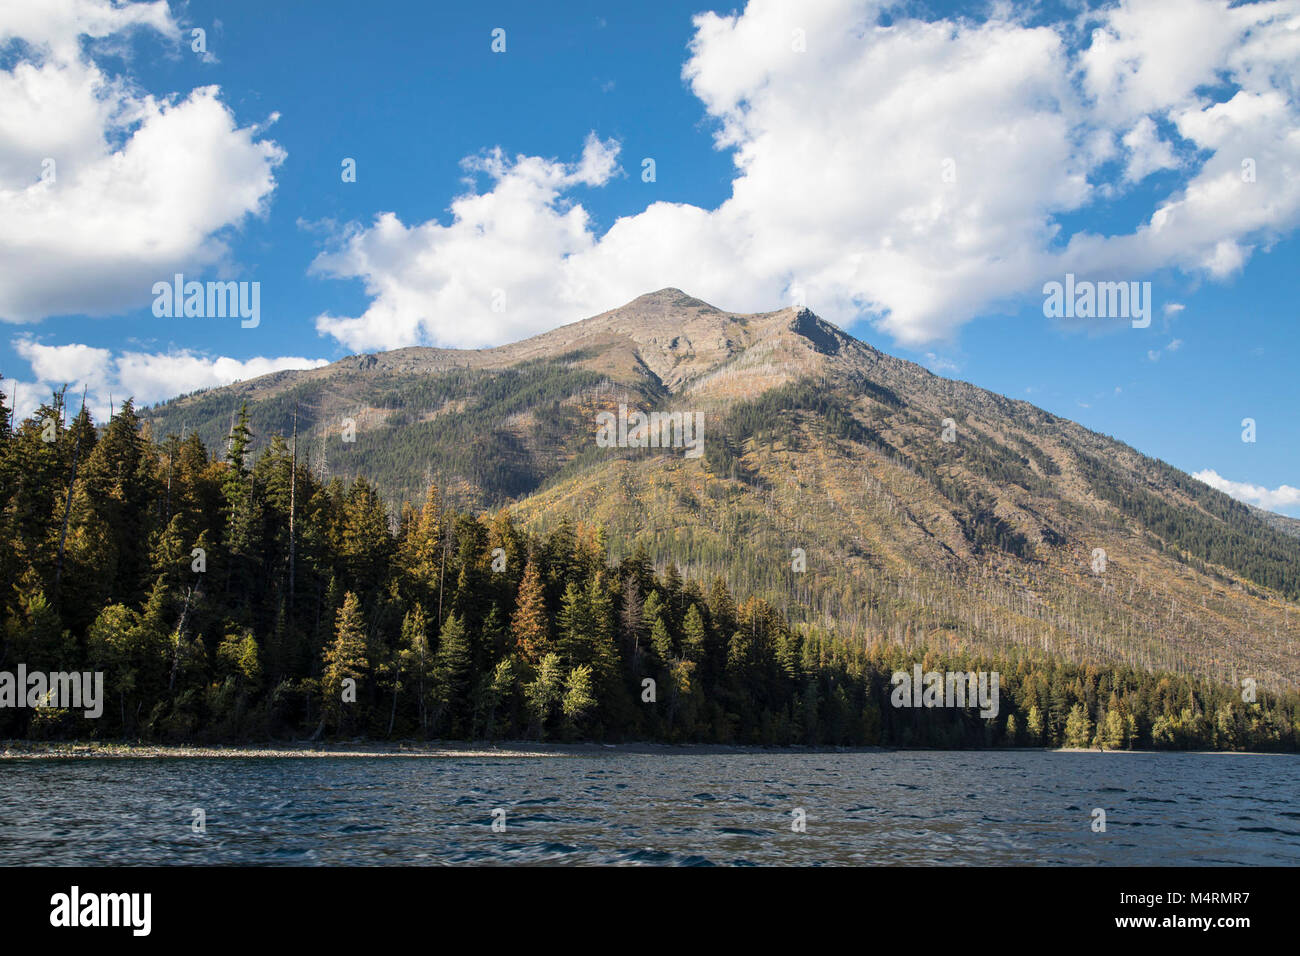 Stanton Mountain From Lake McDonald. Stock Photo